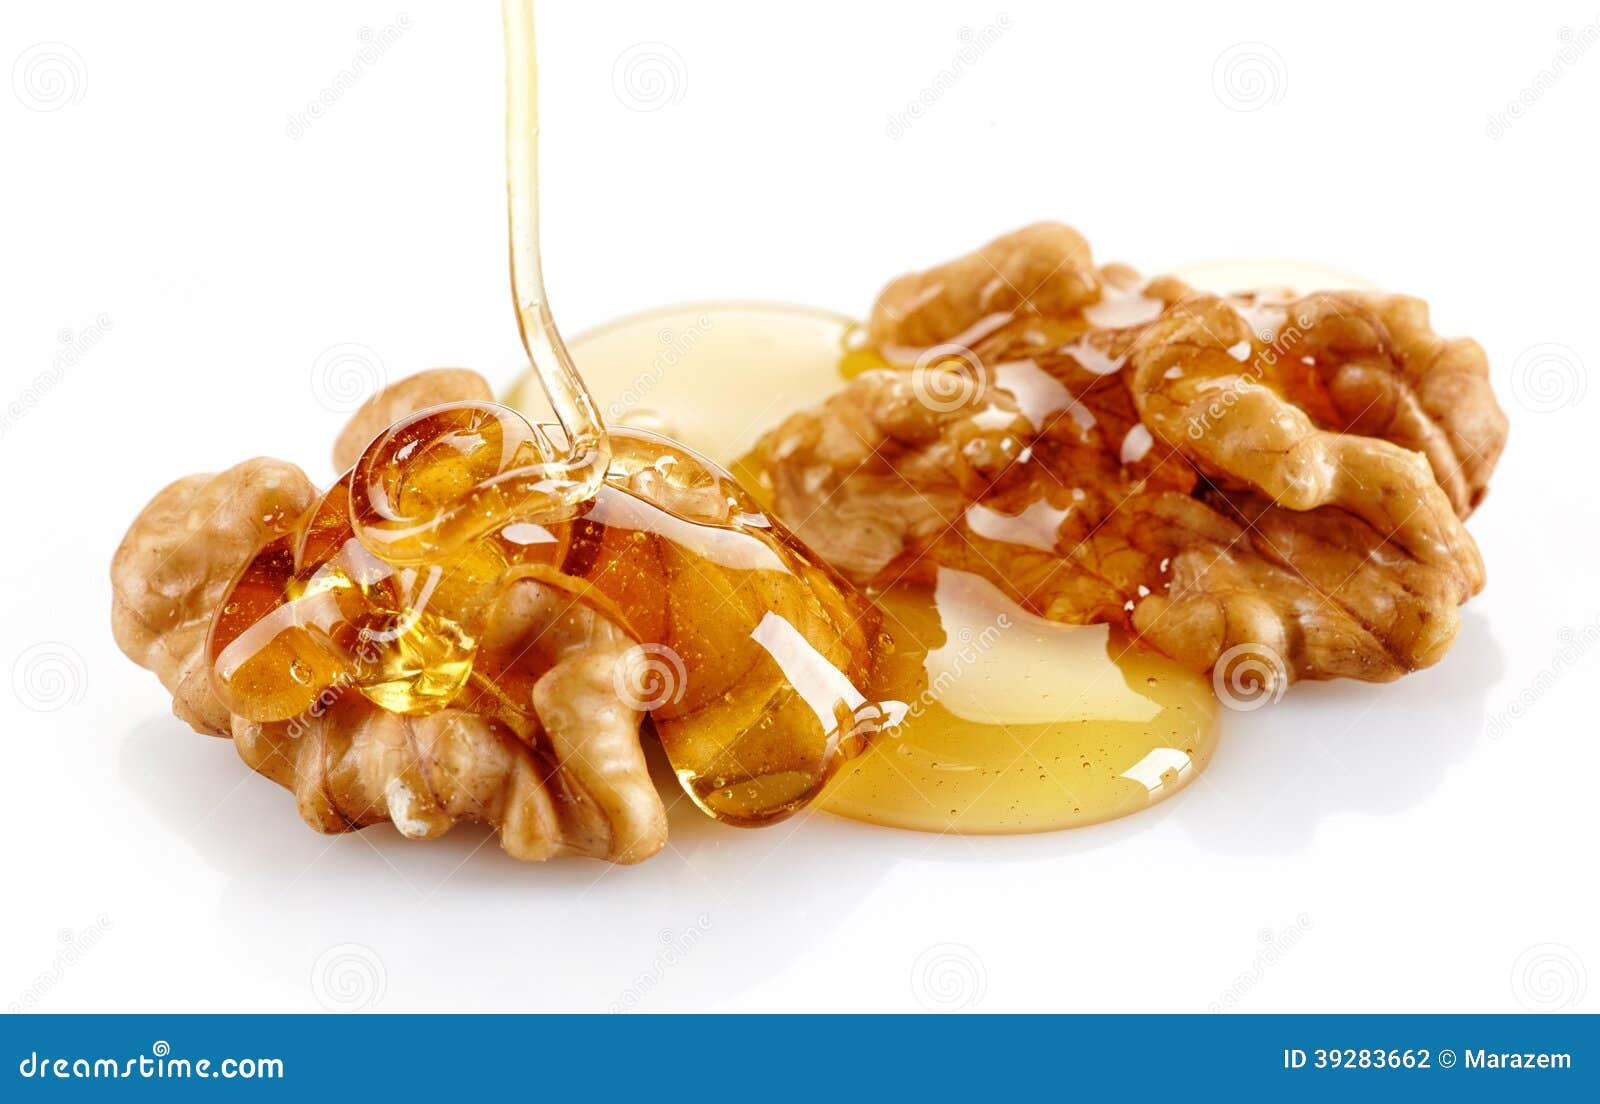 walnut and honey